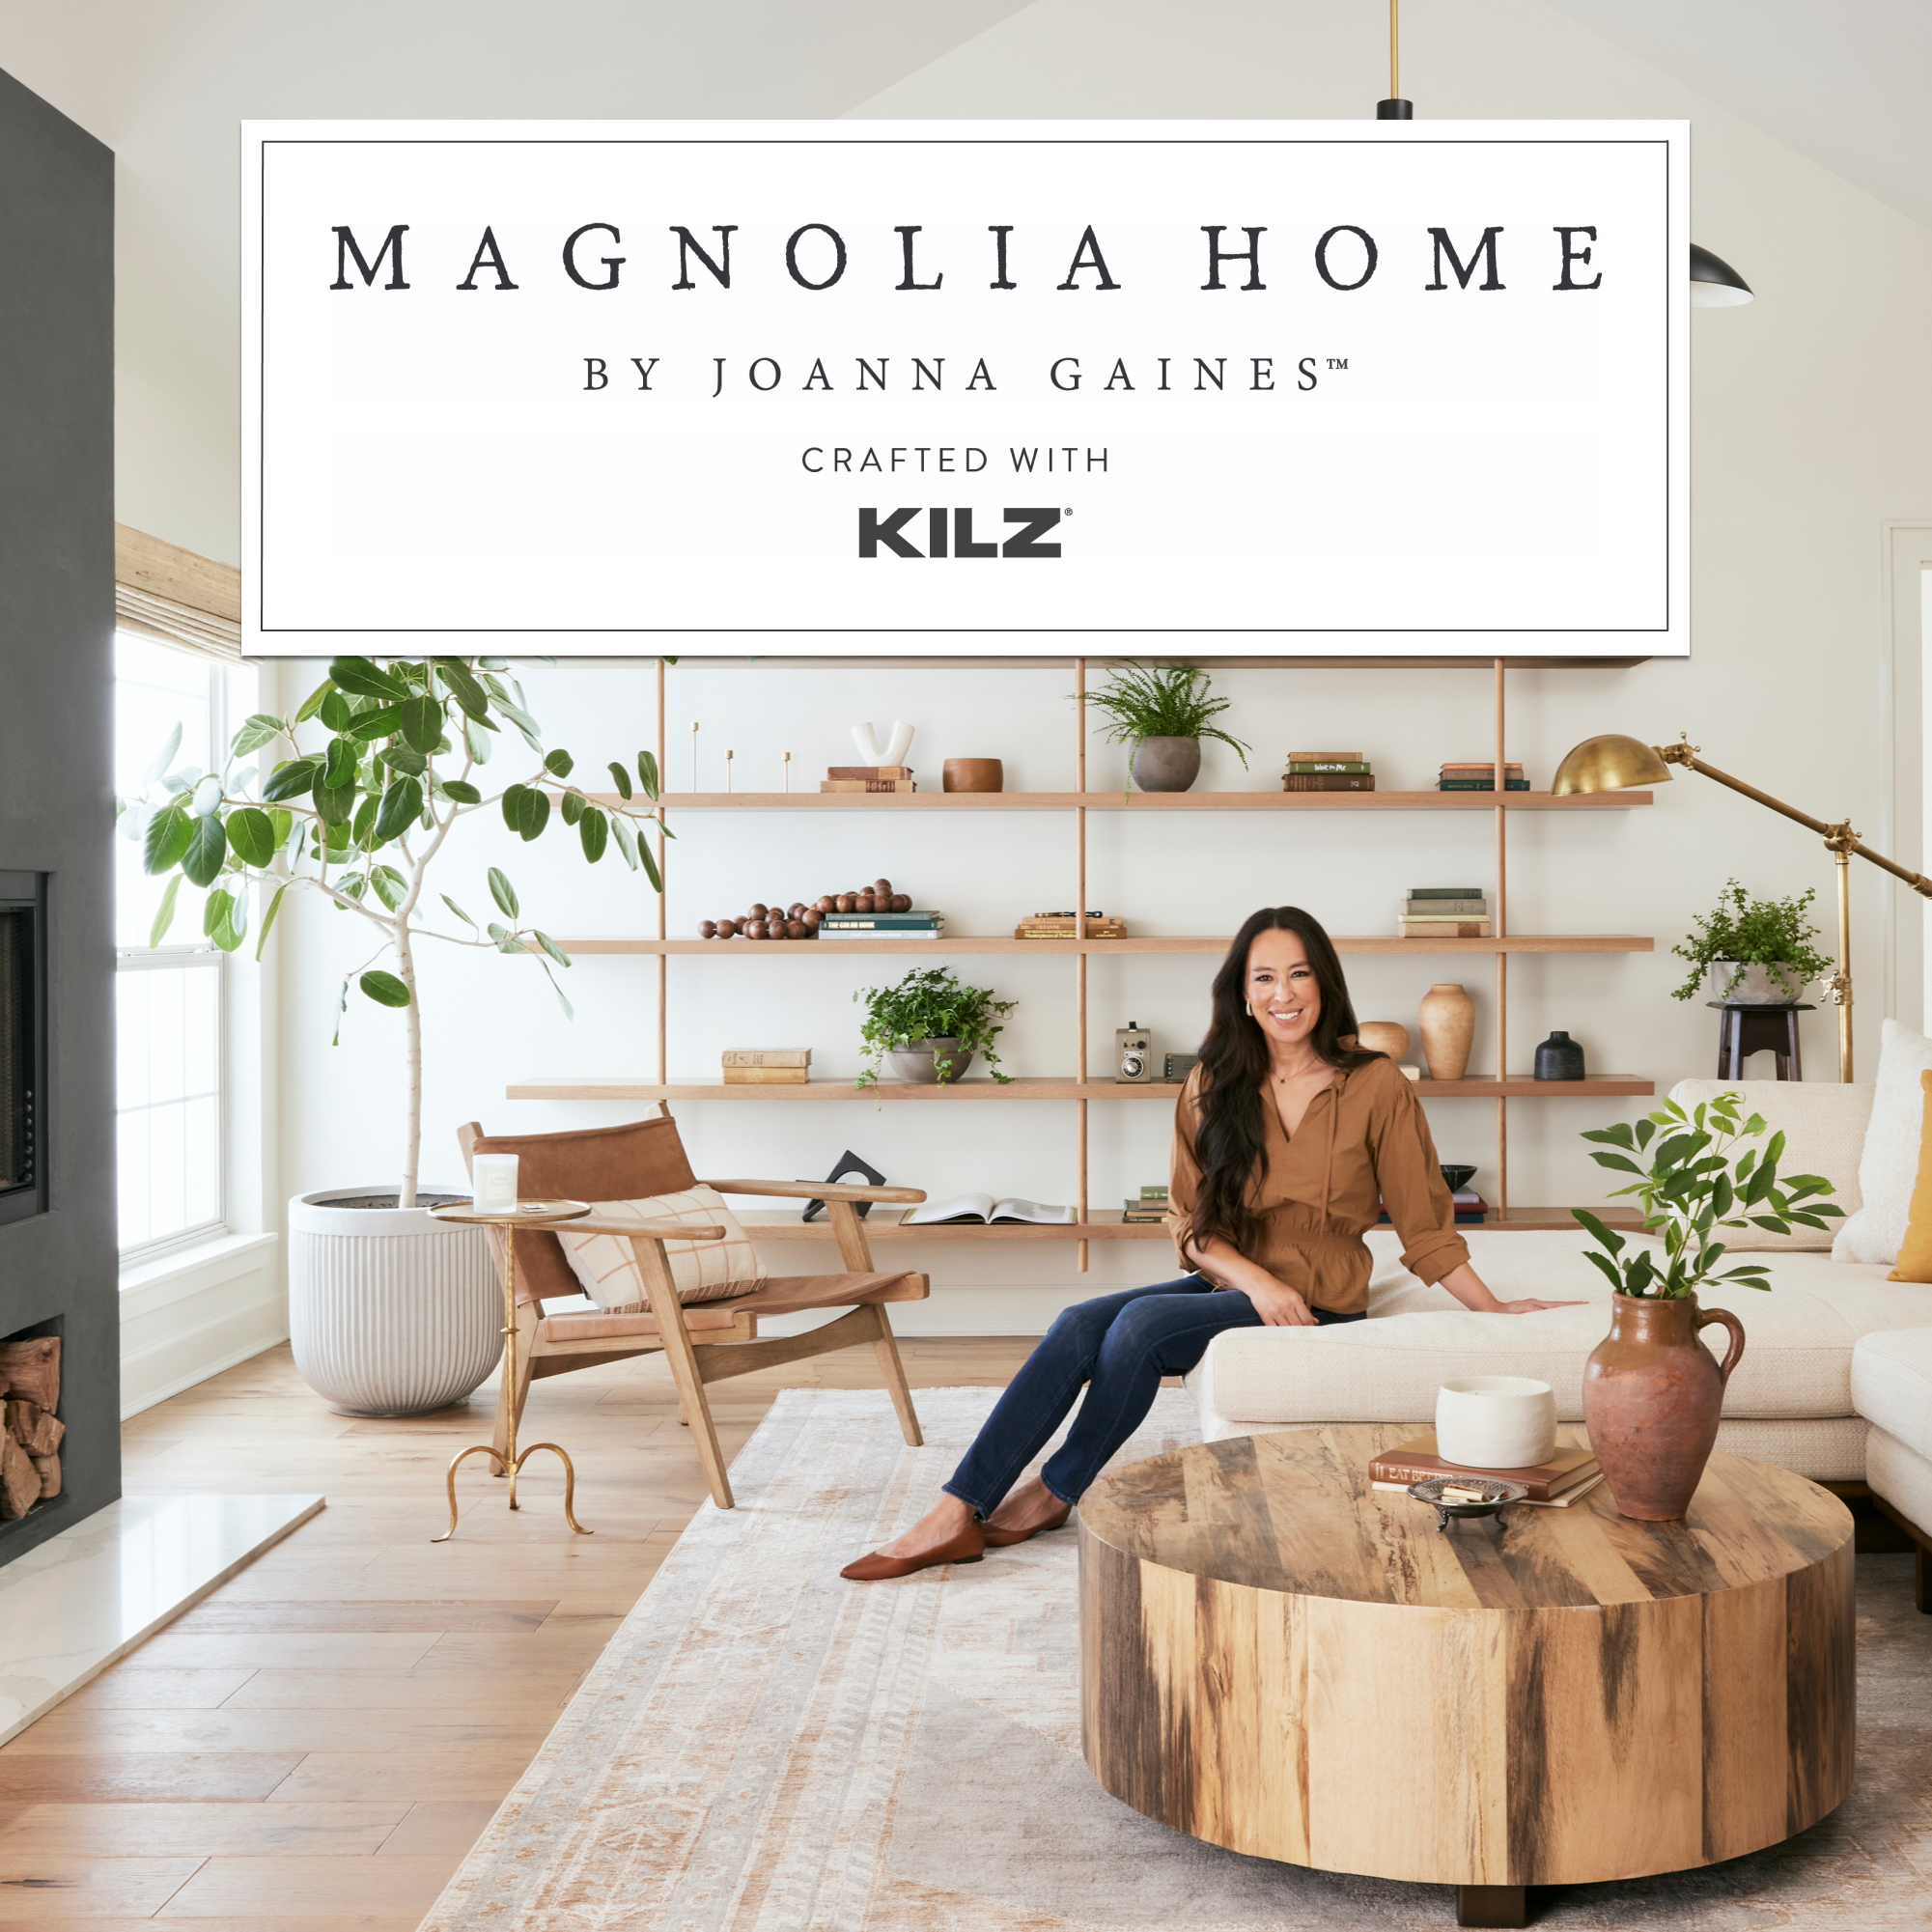 Magnolia Green - Interior Paint - Magnolia